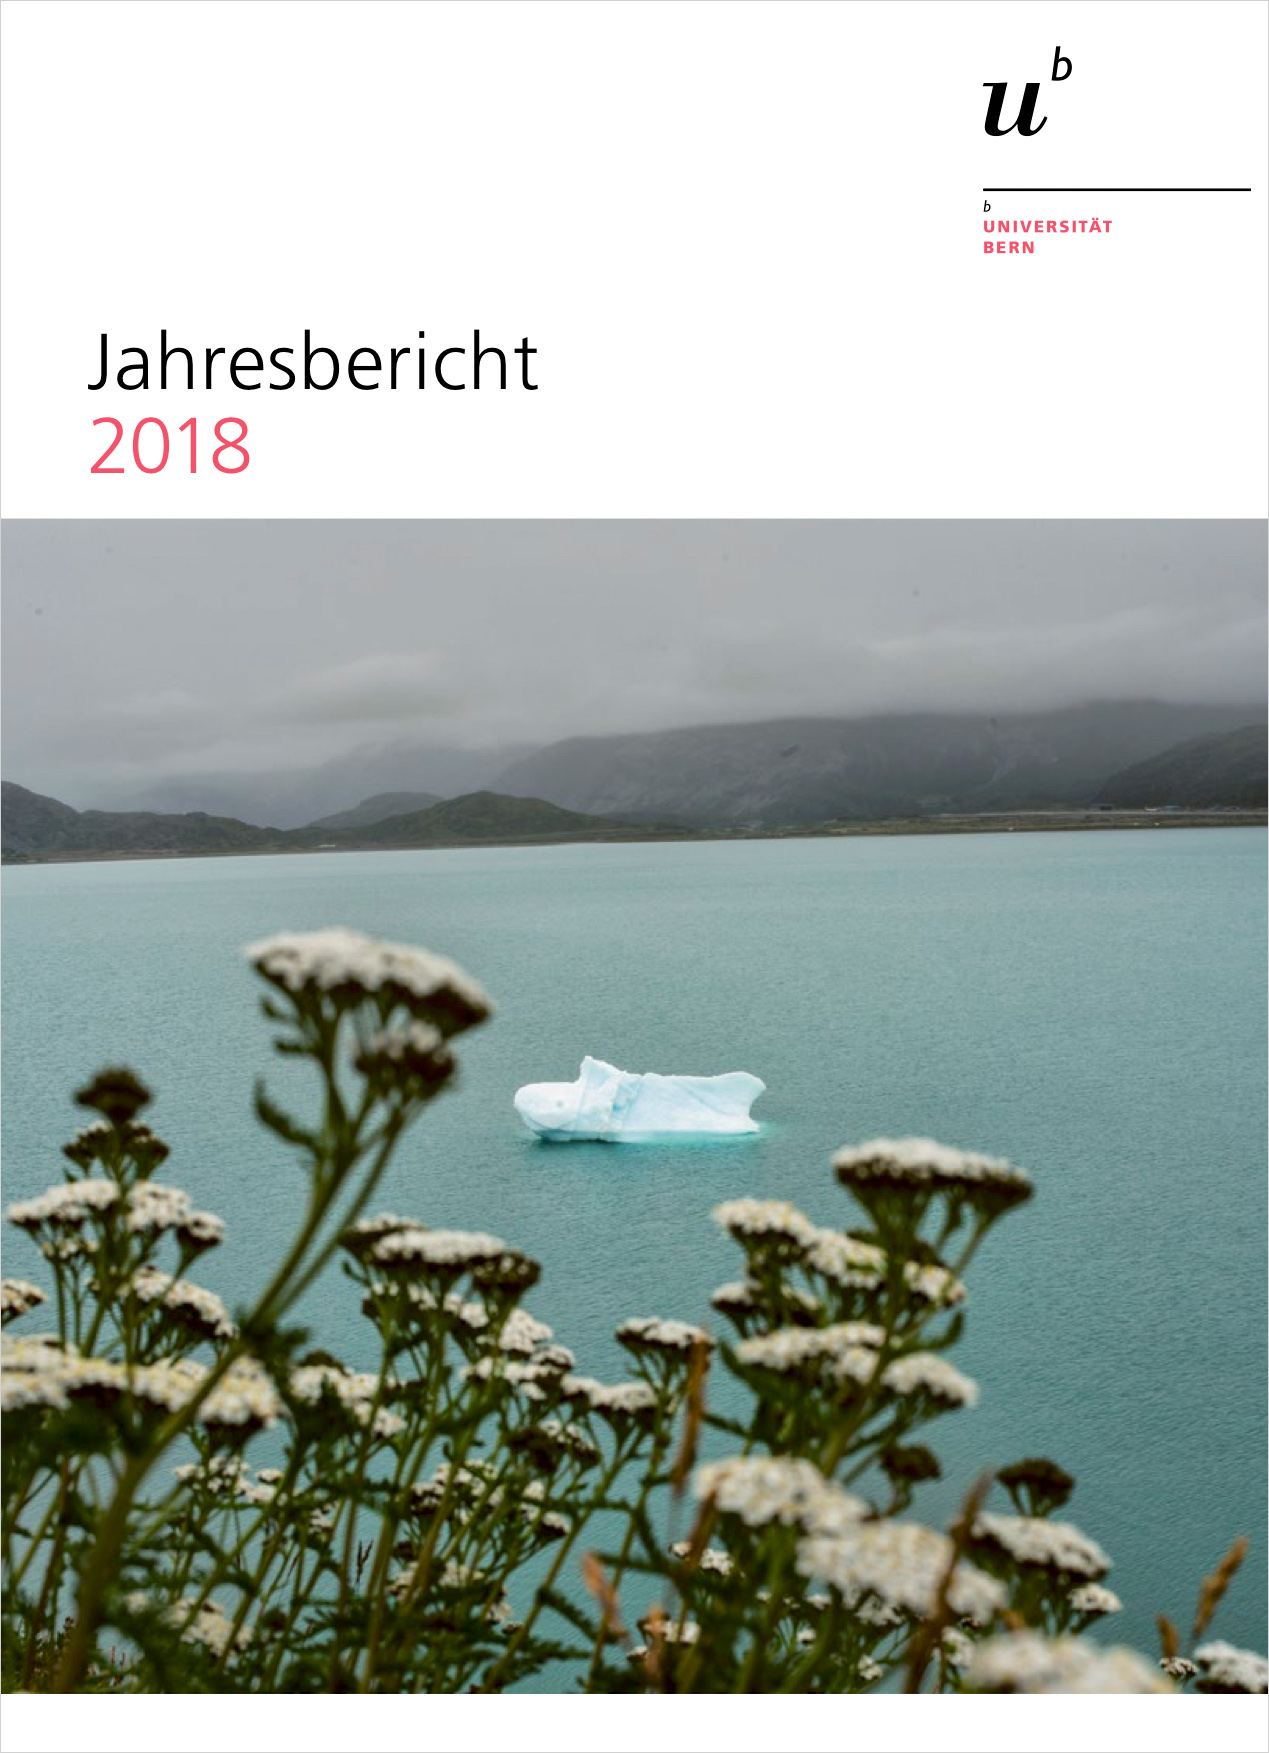 Die Titelseite des Jahresberichts 2018 der Universität Bern. © Universität Bern / Bild: KEYSTONE / NOOR / Kadir von Lohuizen